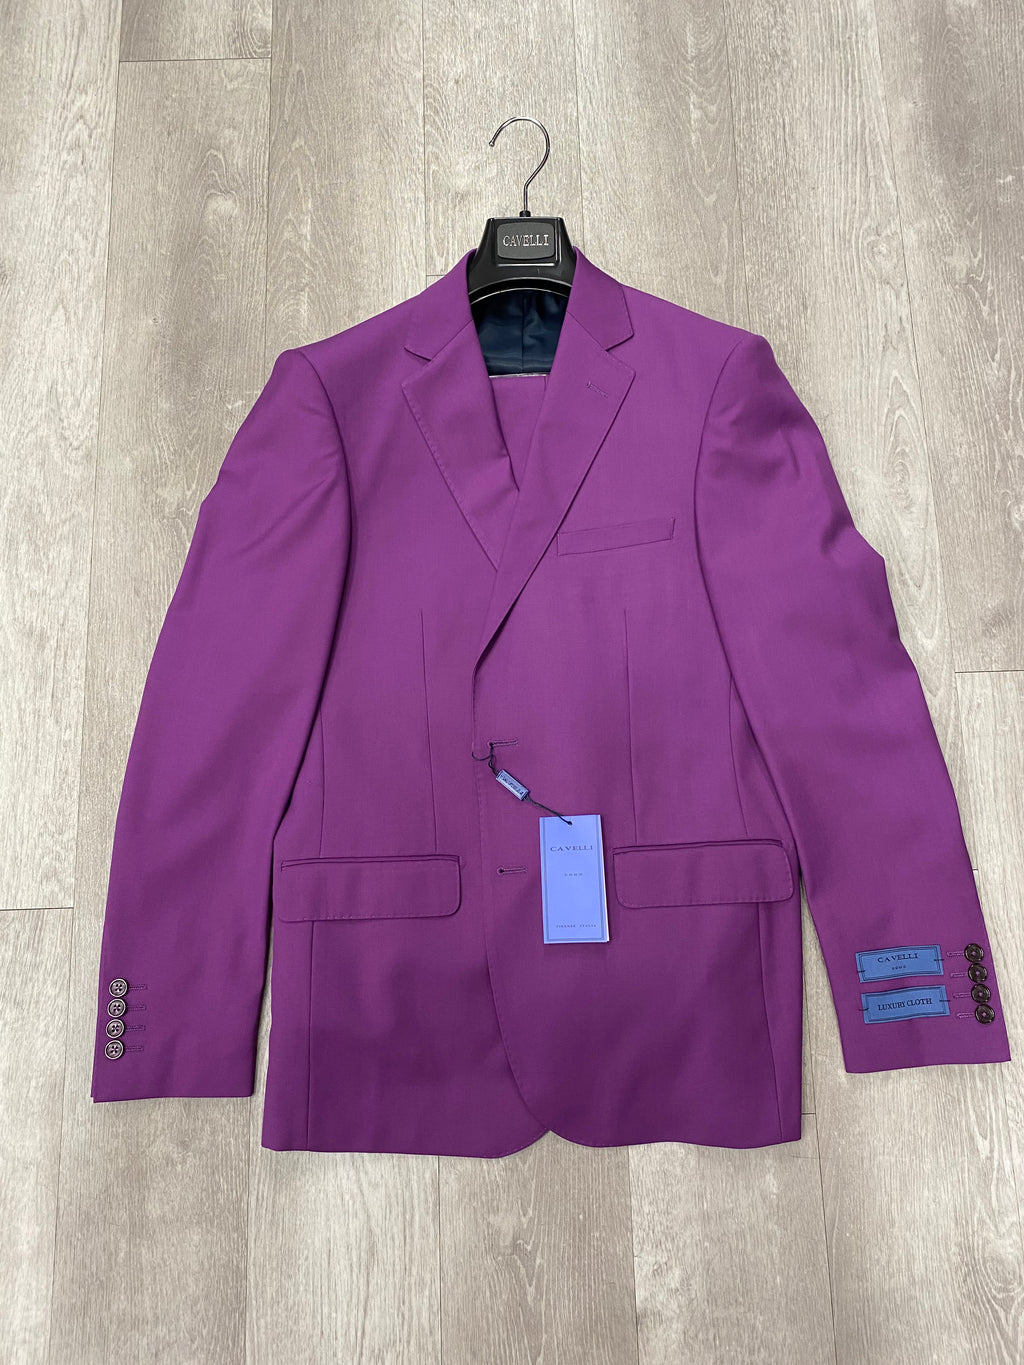 Cavelli Uomo Porto Slim Fit Suit 3477/36 Purple